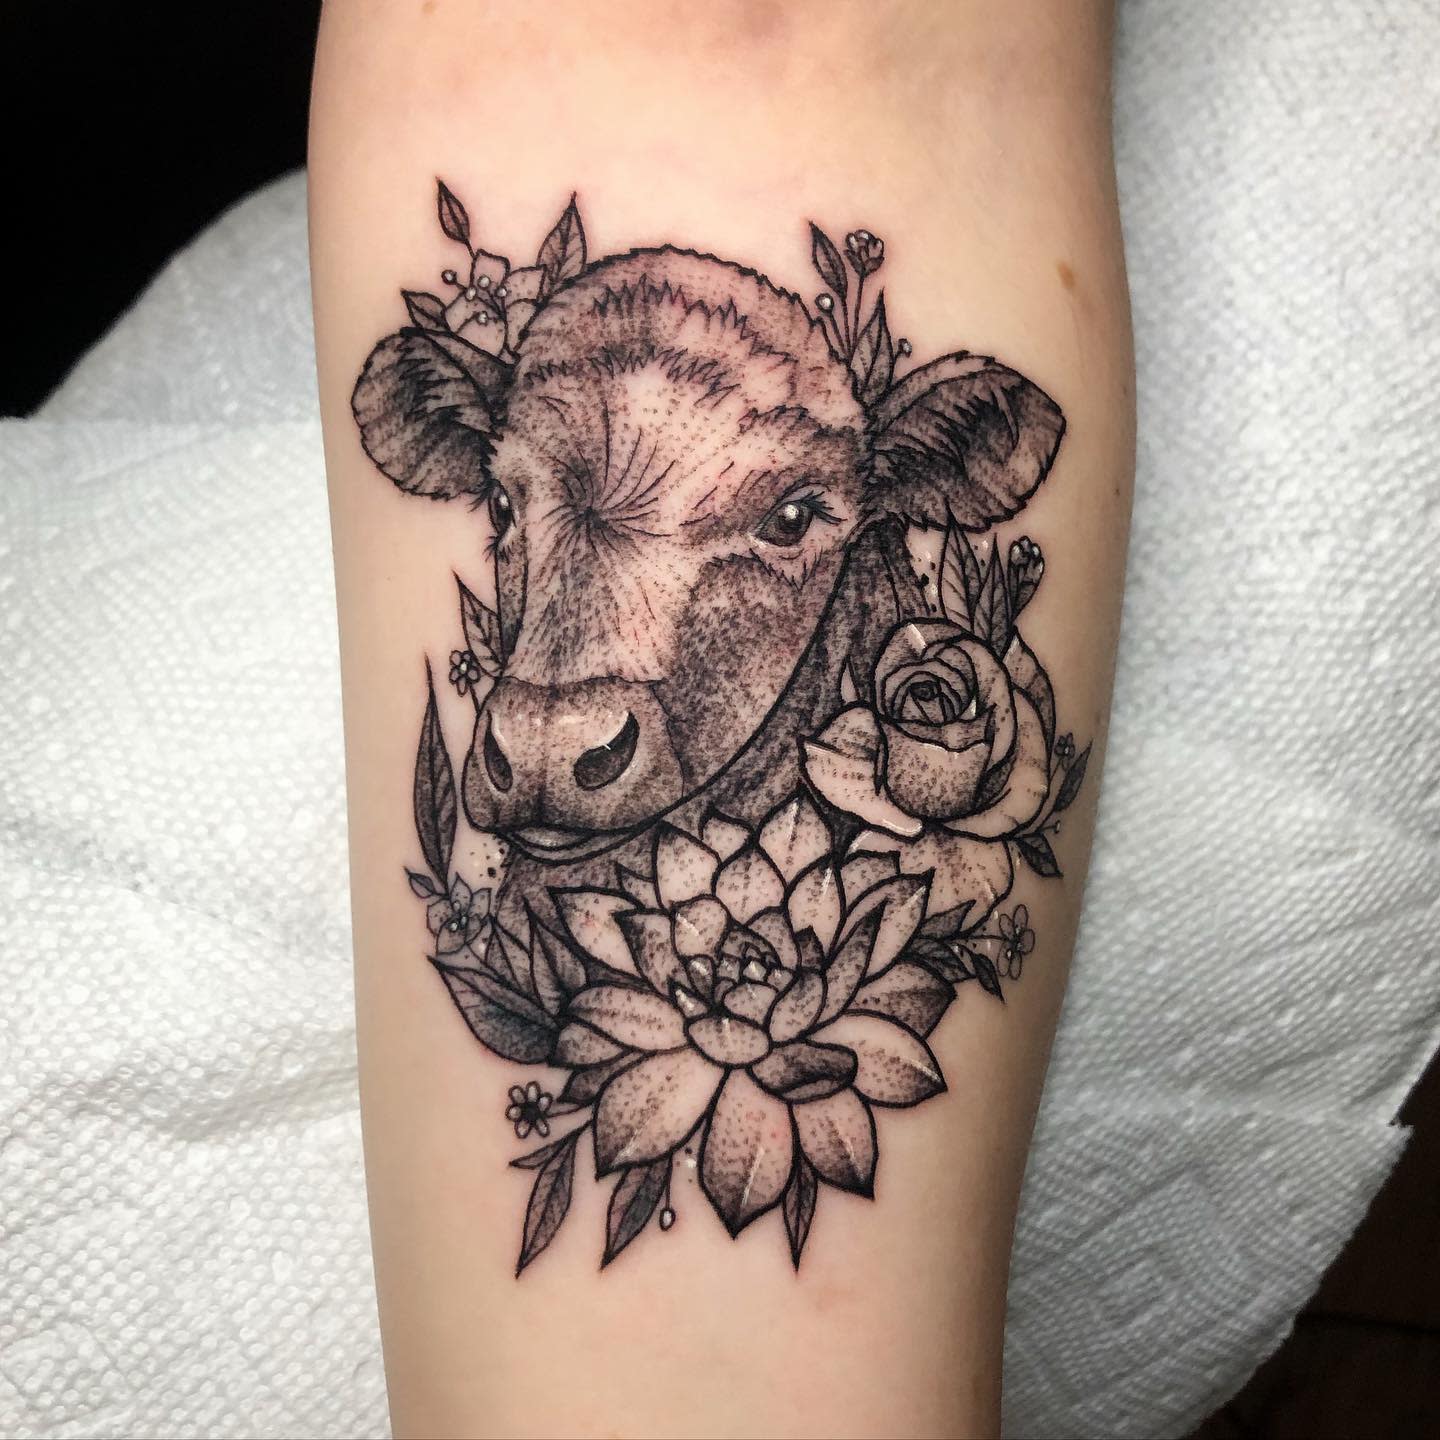 12 Minimalist Cow Tattoo Ideas To Inspire You  alexie